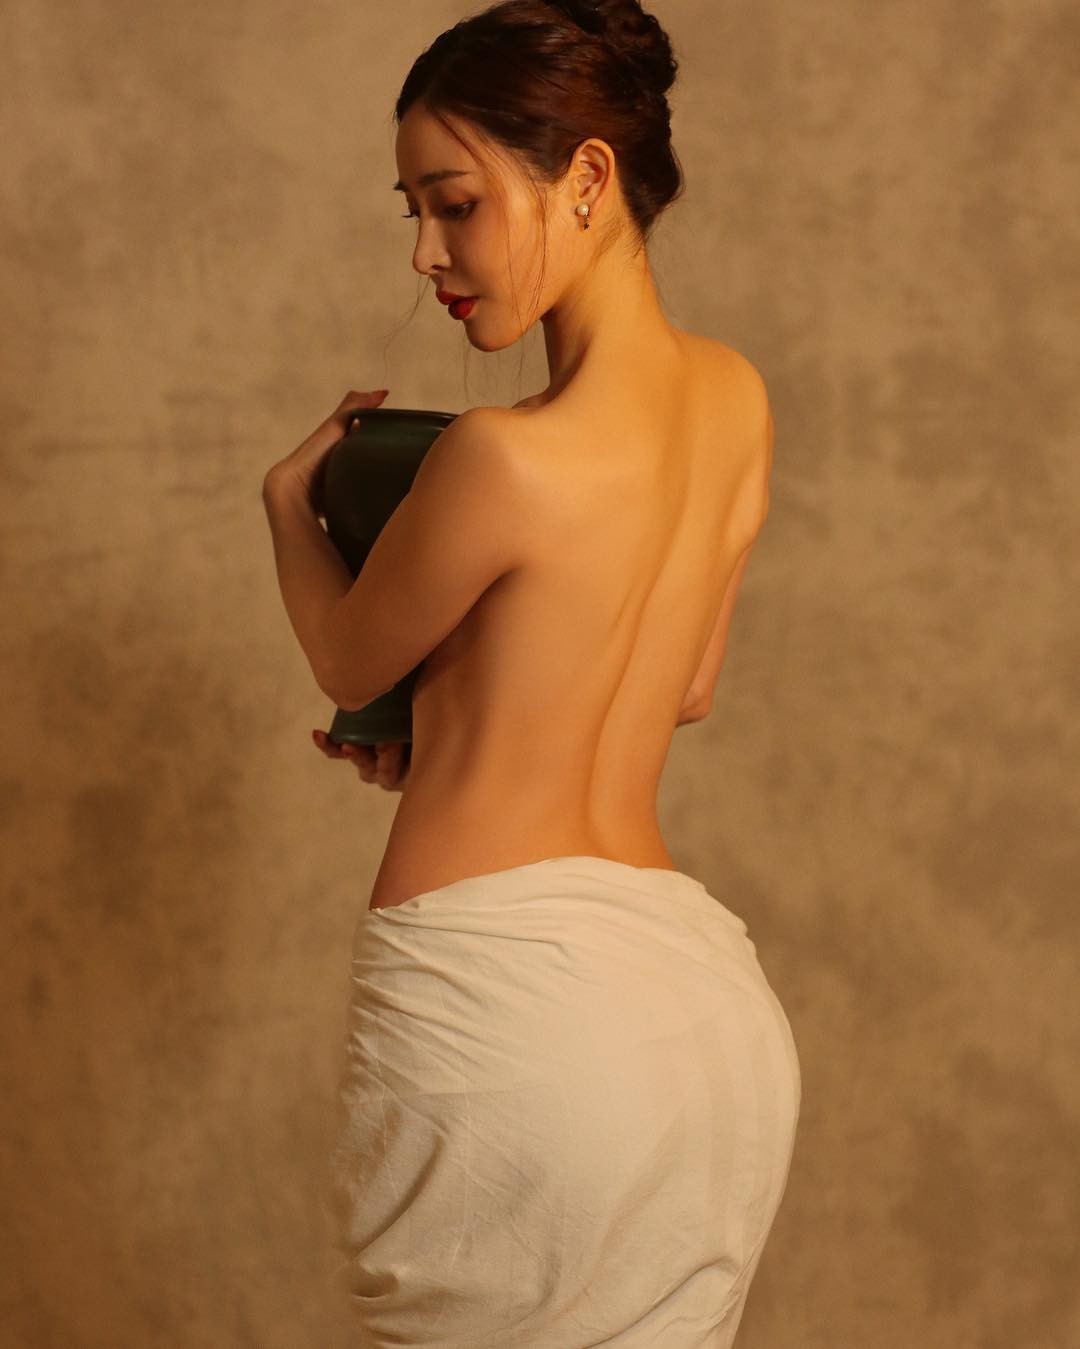 Yuan Herong Nude TheFappening.Pro 39 - Yuan Herong Nude (118 Photos And Videos)